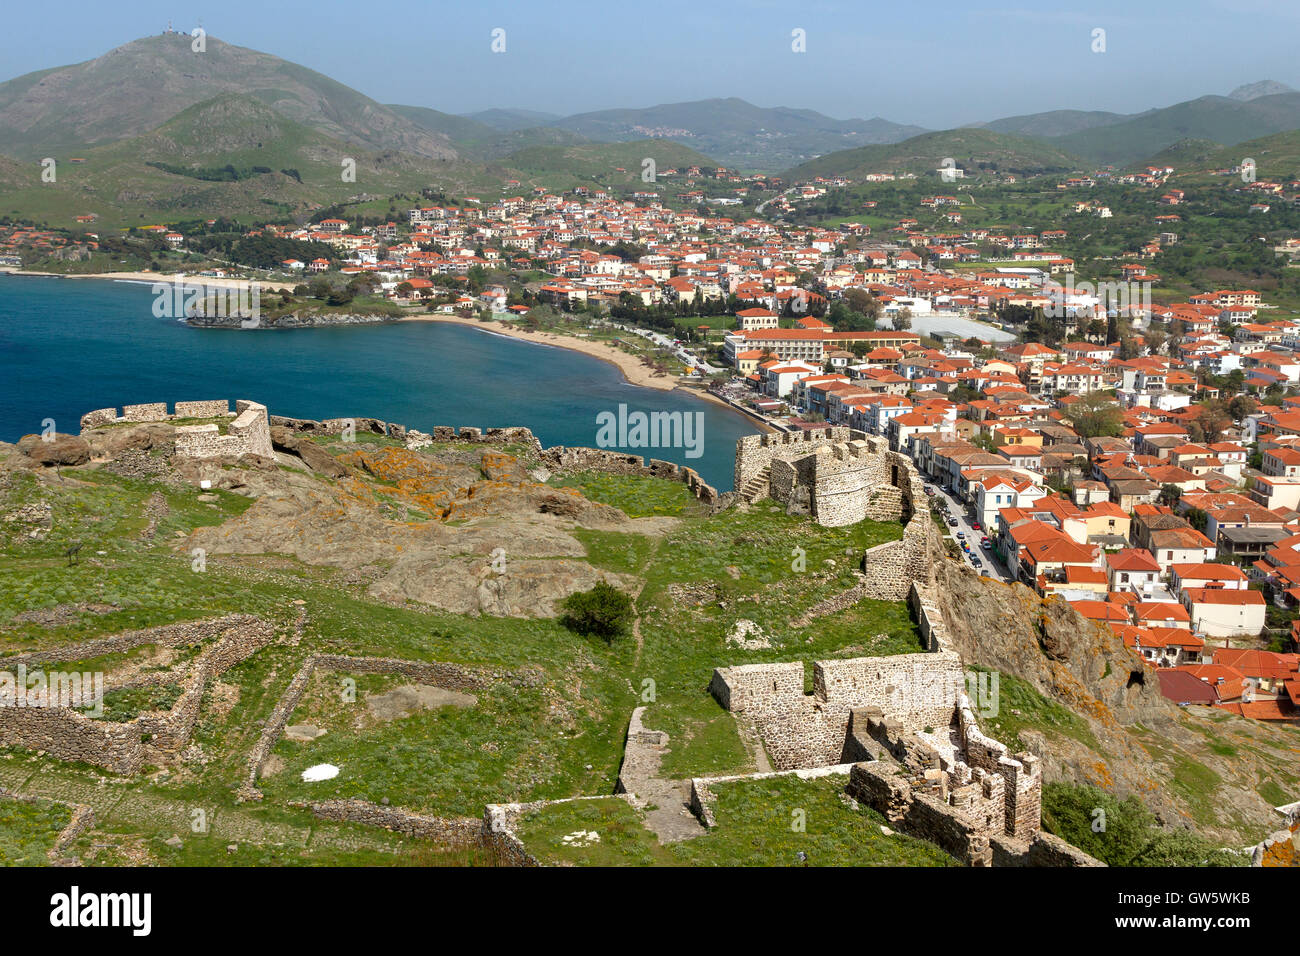 La ville de Myrina, dans l'île de Lemnos, en Grèce, et une partie du château de la ville. Le château médiéval est l'un des plus grands de la Méditerranée. Banque D'Images